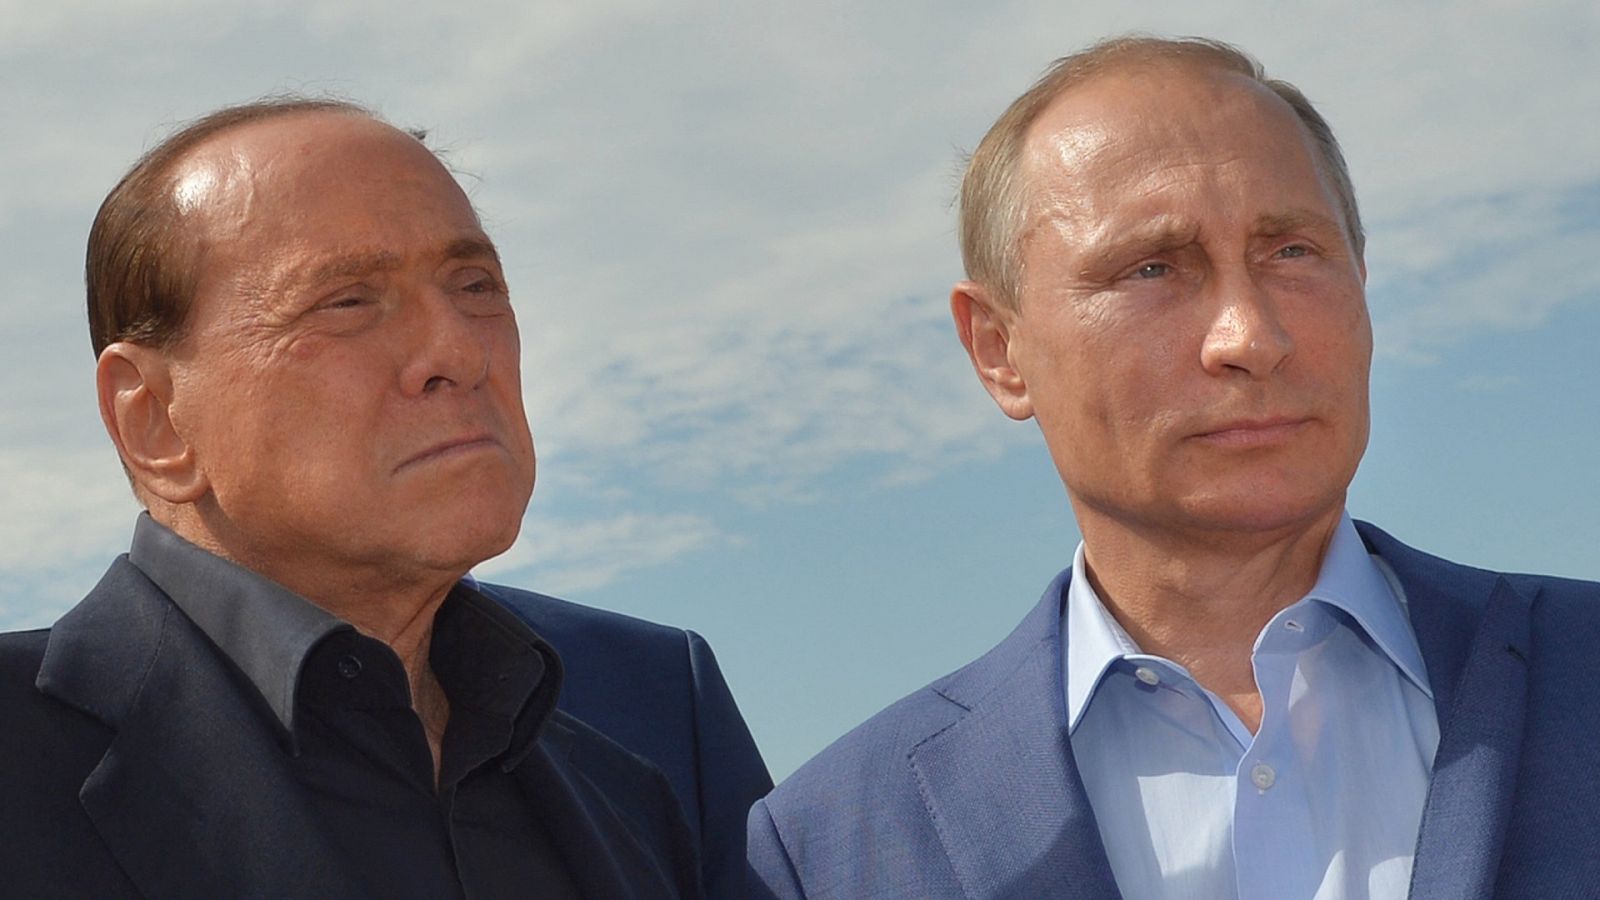 Berlusconi presume de su amistad con Putin en un audio filtrado